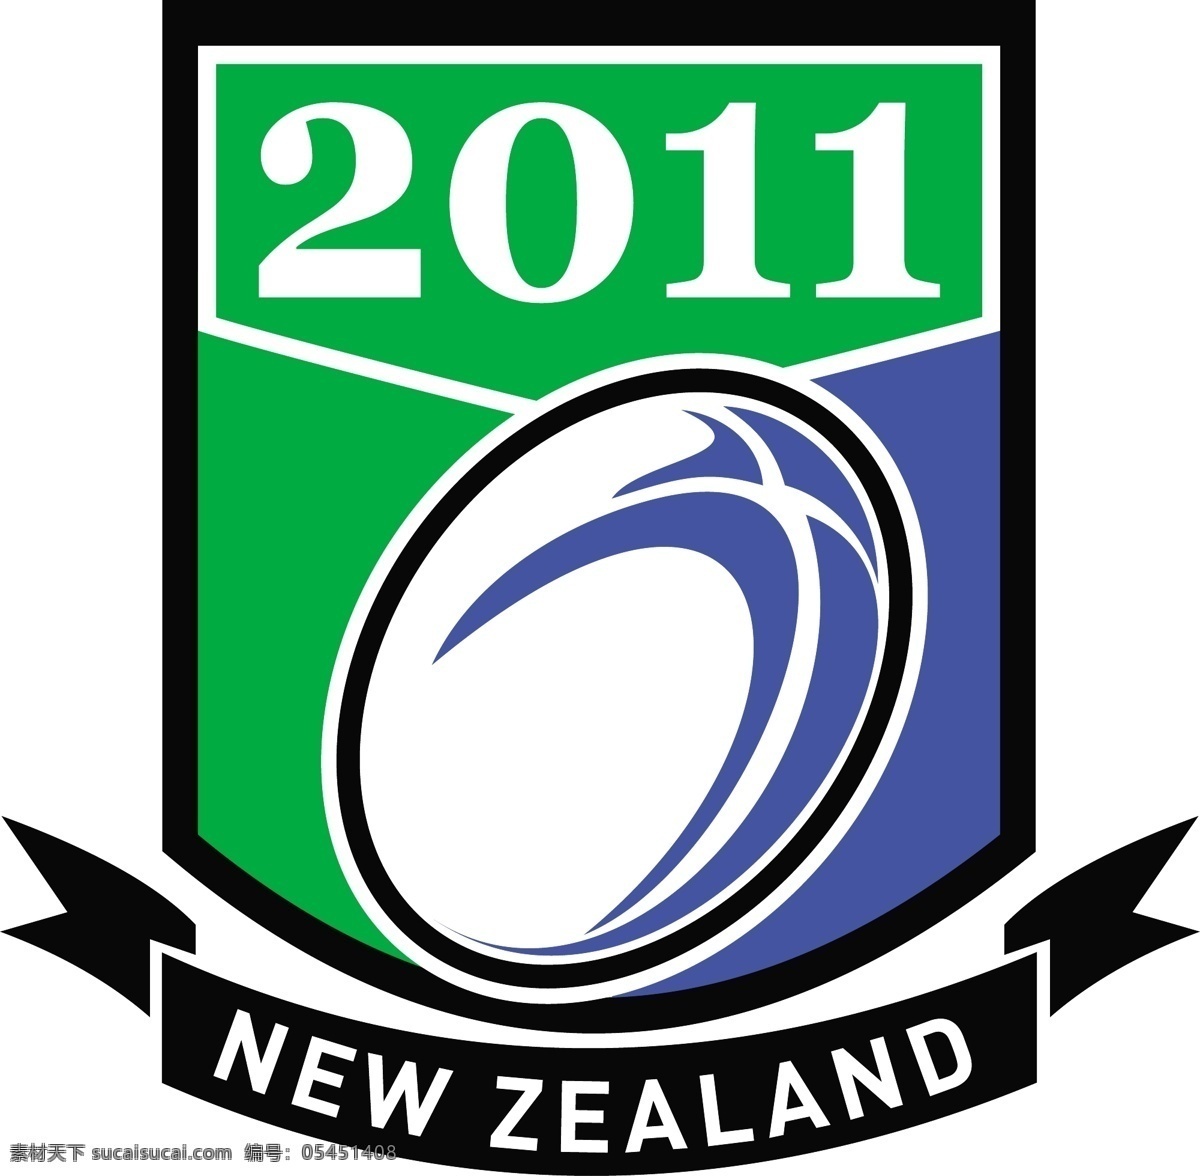 新西兰 橄榄球 2011 盾 矢量图 其他矢量图